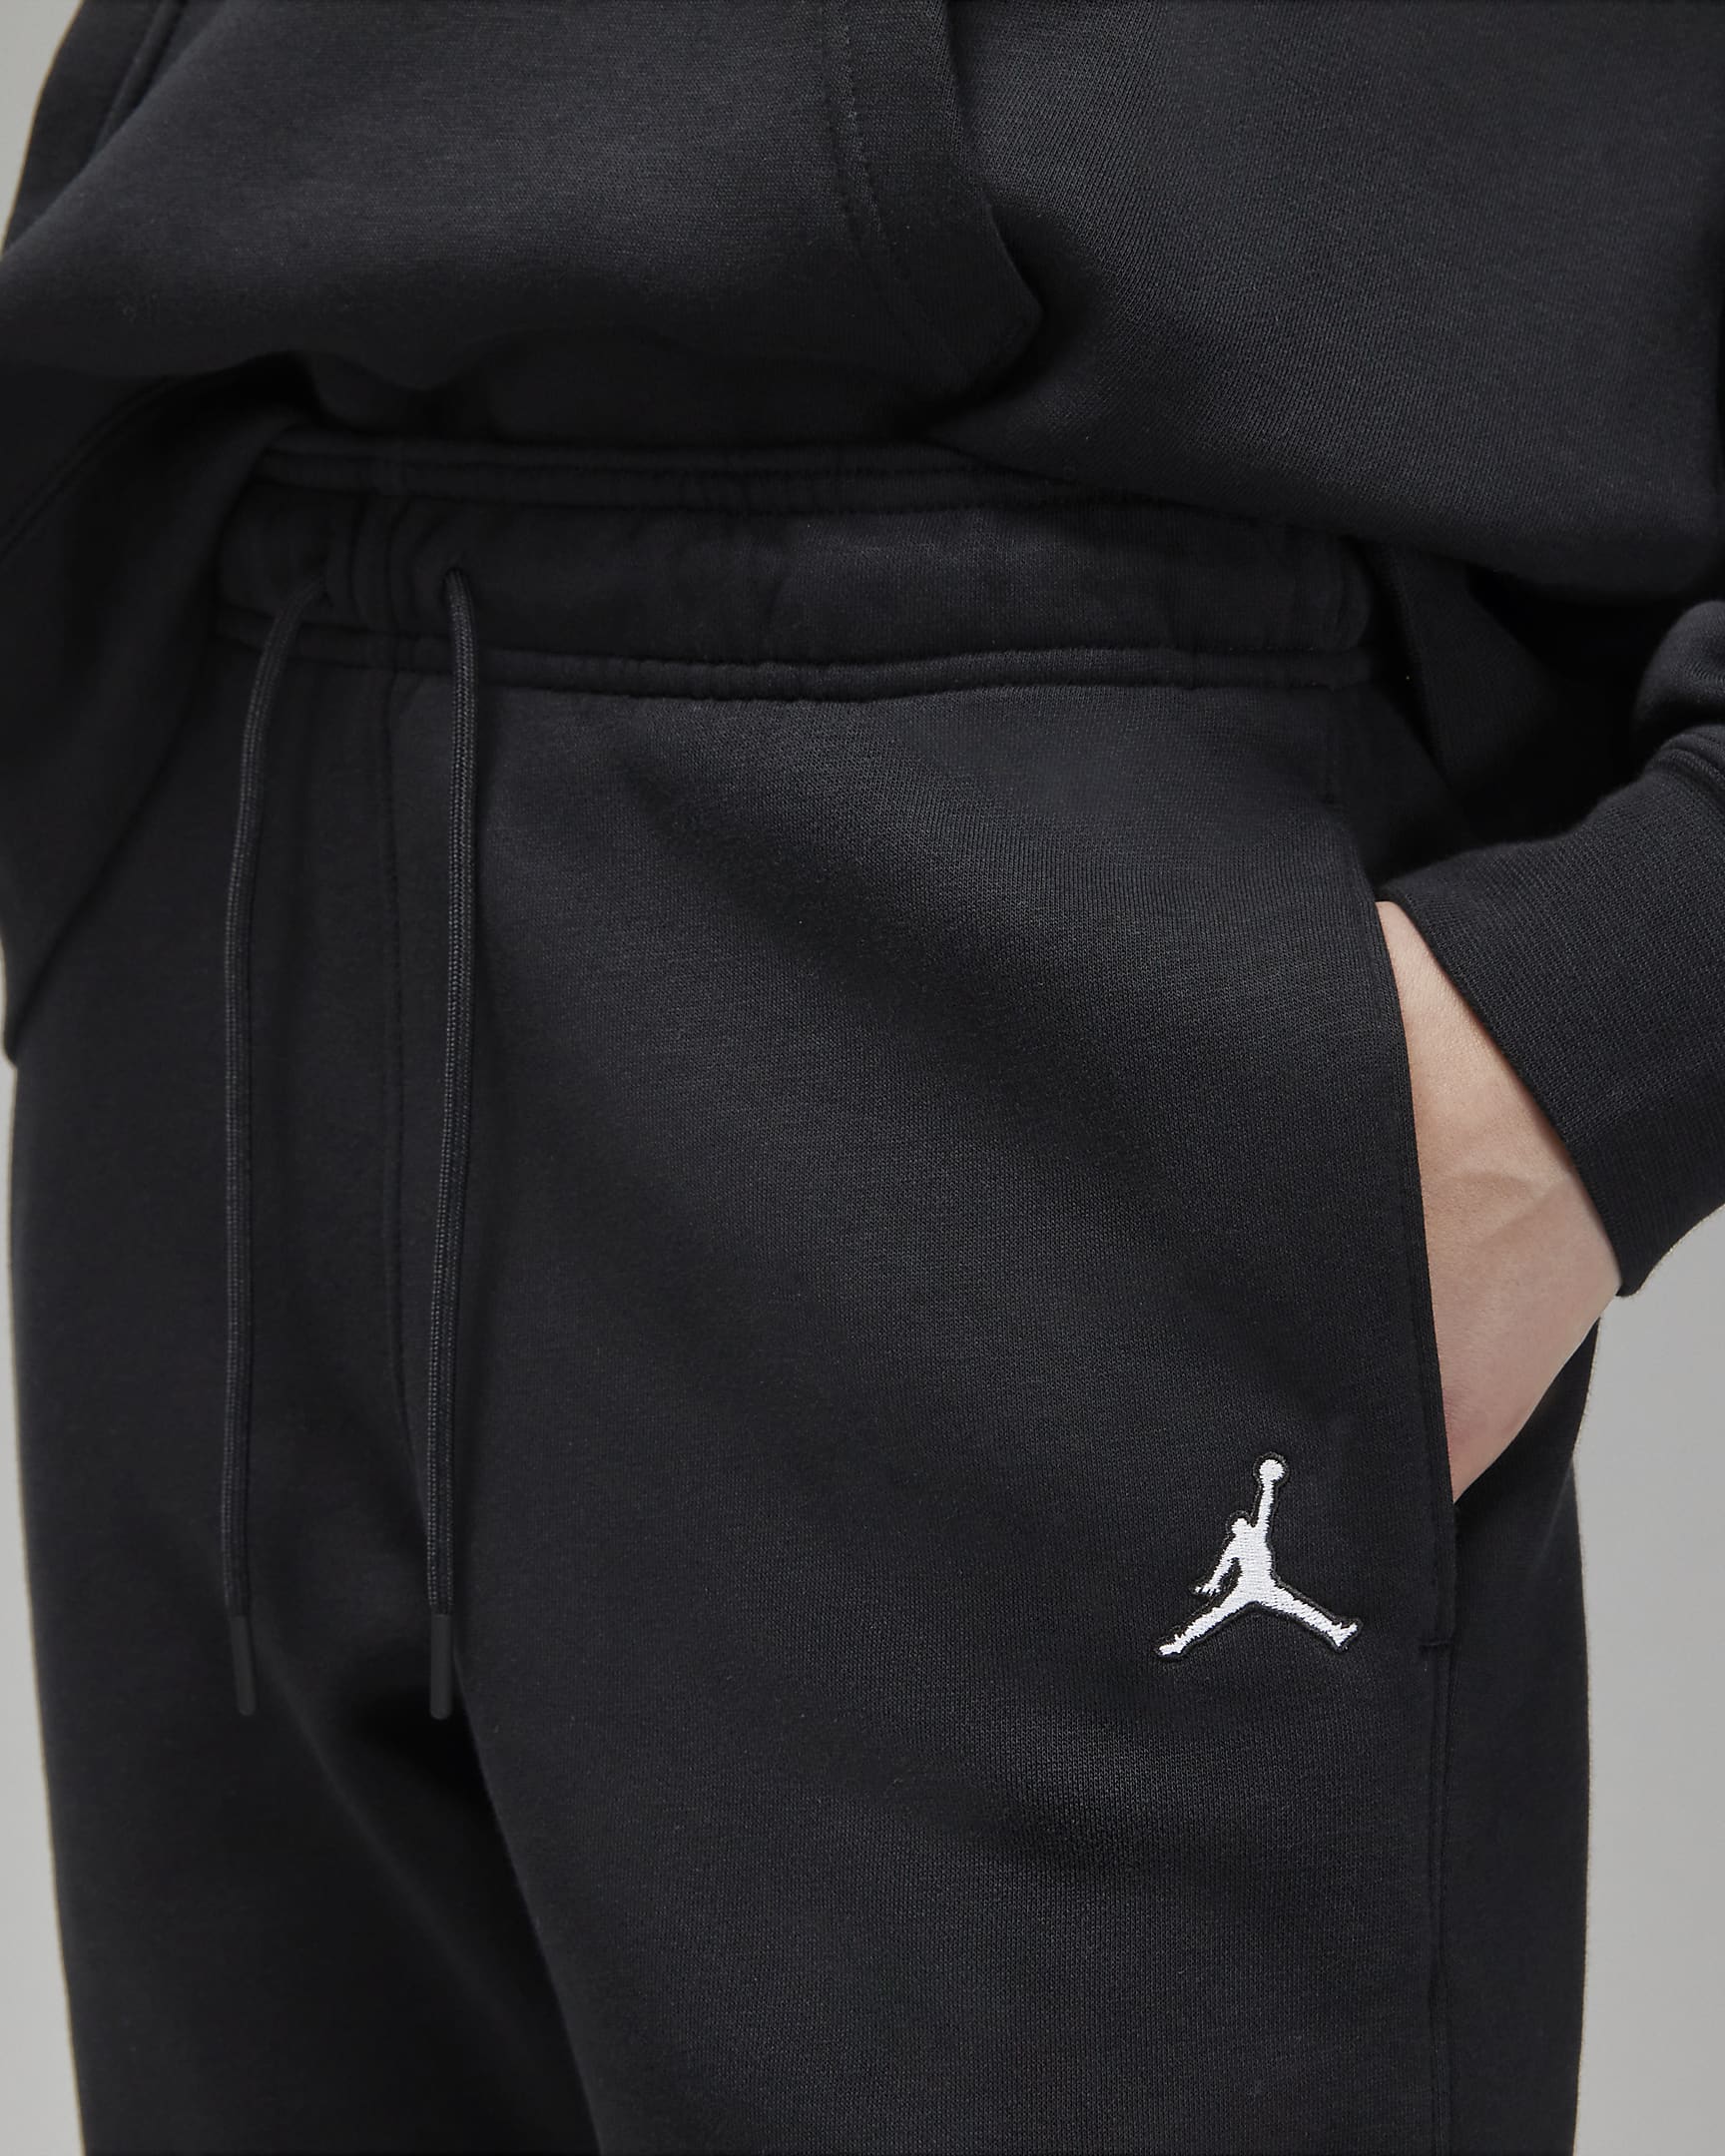 Pants de tejido Fleece para mujer Jordan Brooklyn. Nike.com